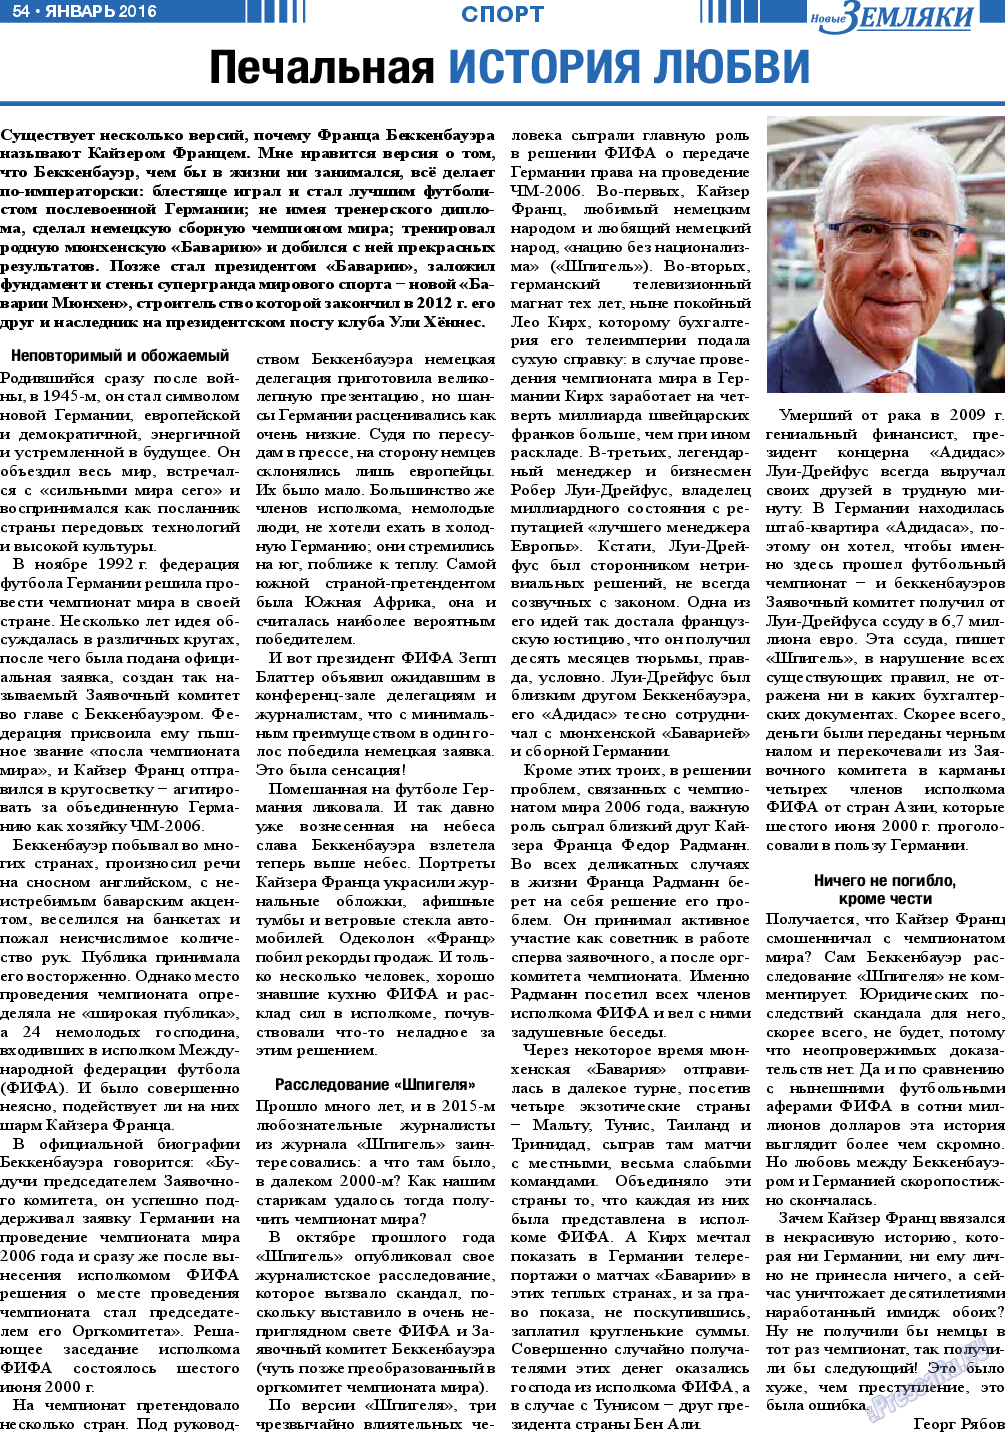 Новые Земляки, газета. 2016 №1 стр.54